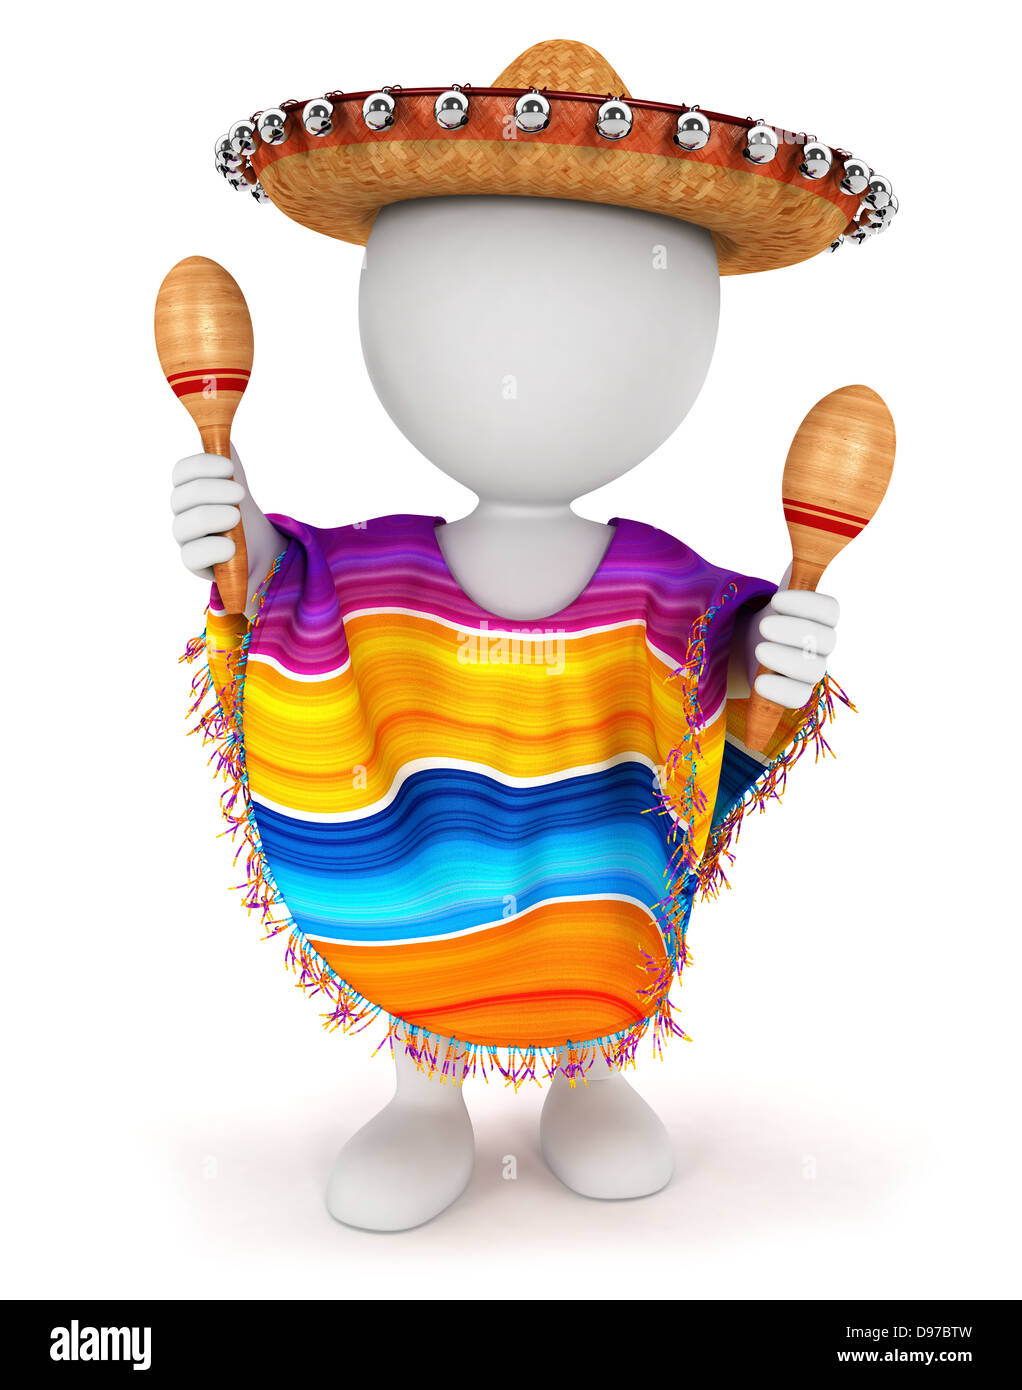 Les blancs 3d avec un sombrero mexicain, un poncho et jouant des maracas, isolé sur fond blanc, image 3D Banque D'Images